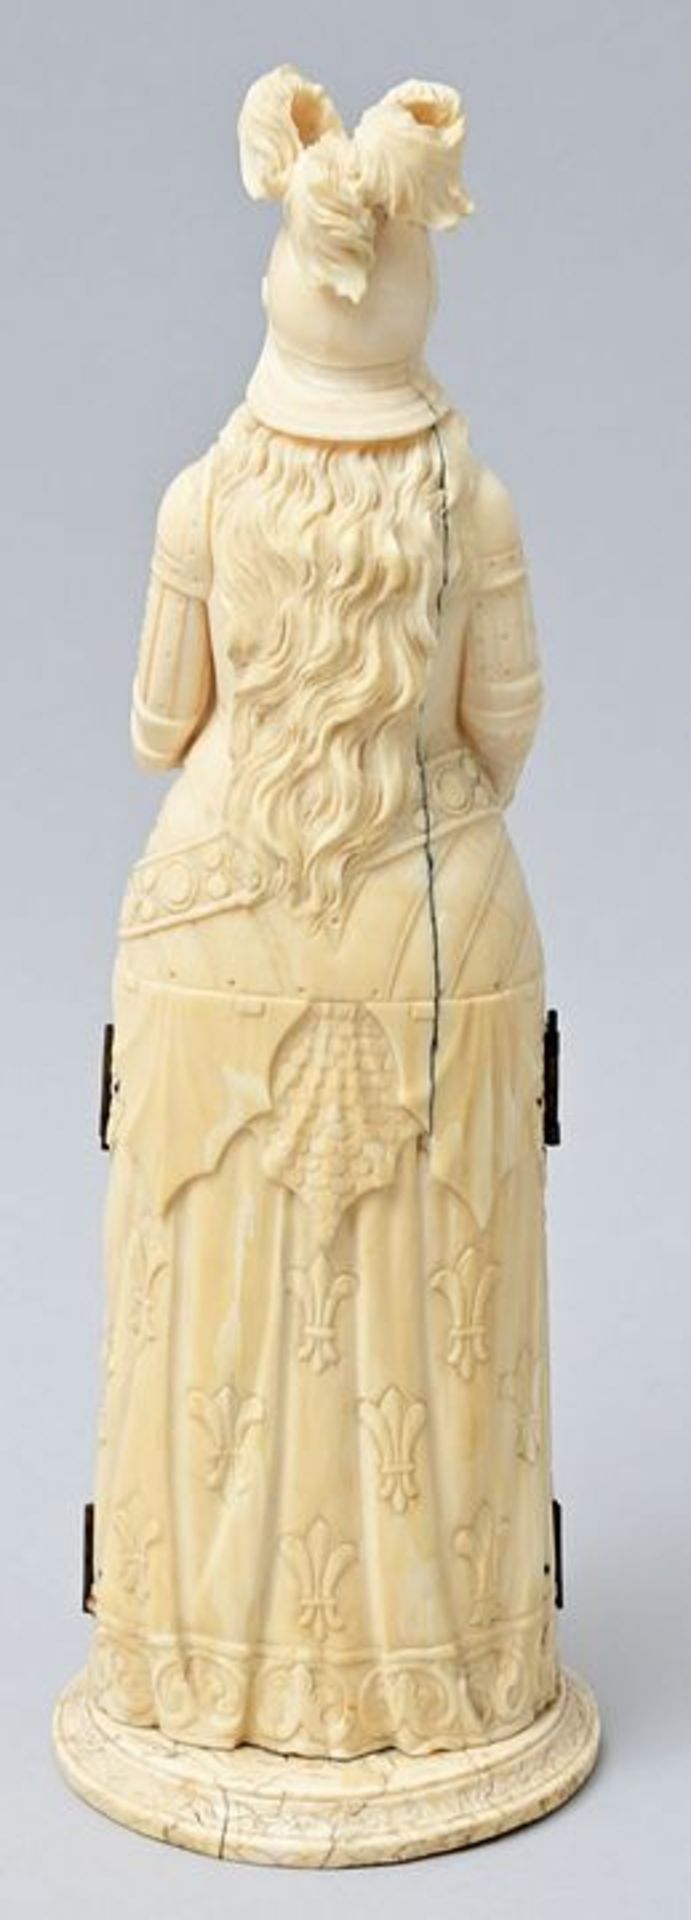 Figur Elfenbein klappbar/ ivory triptych - Image 3 of 5